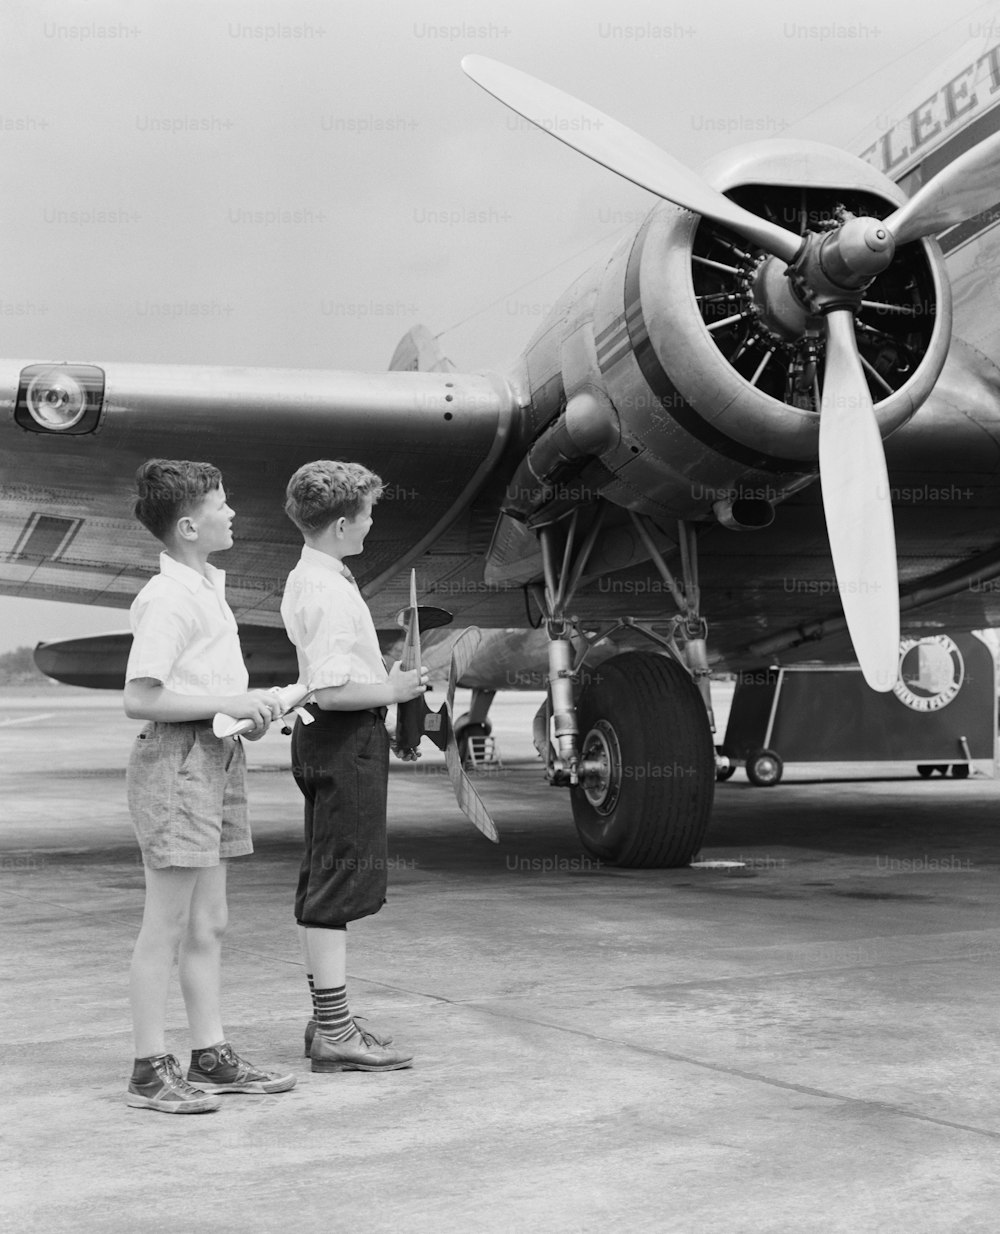 미국 - 1940년대경: 장난감 비행기를 들고 프로펠러 비행기 옆에 서 있는 두 소년.